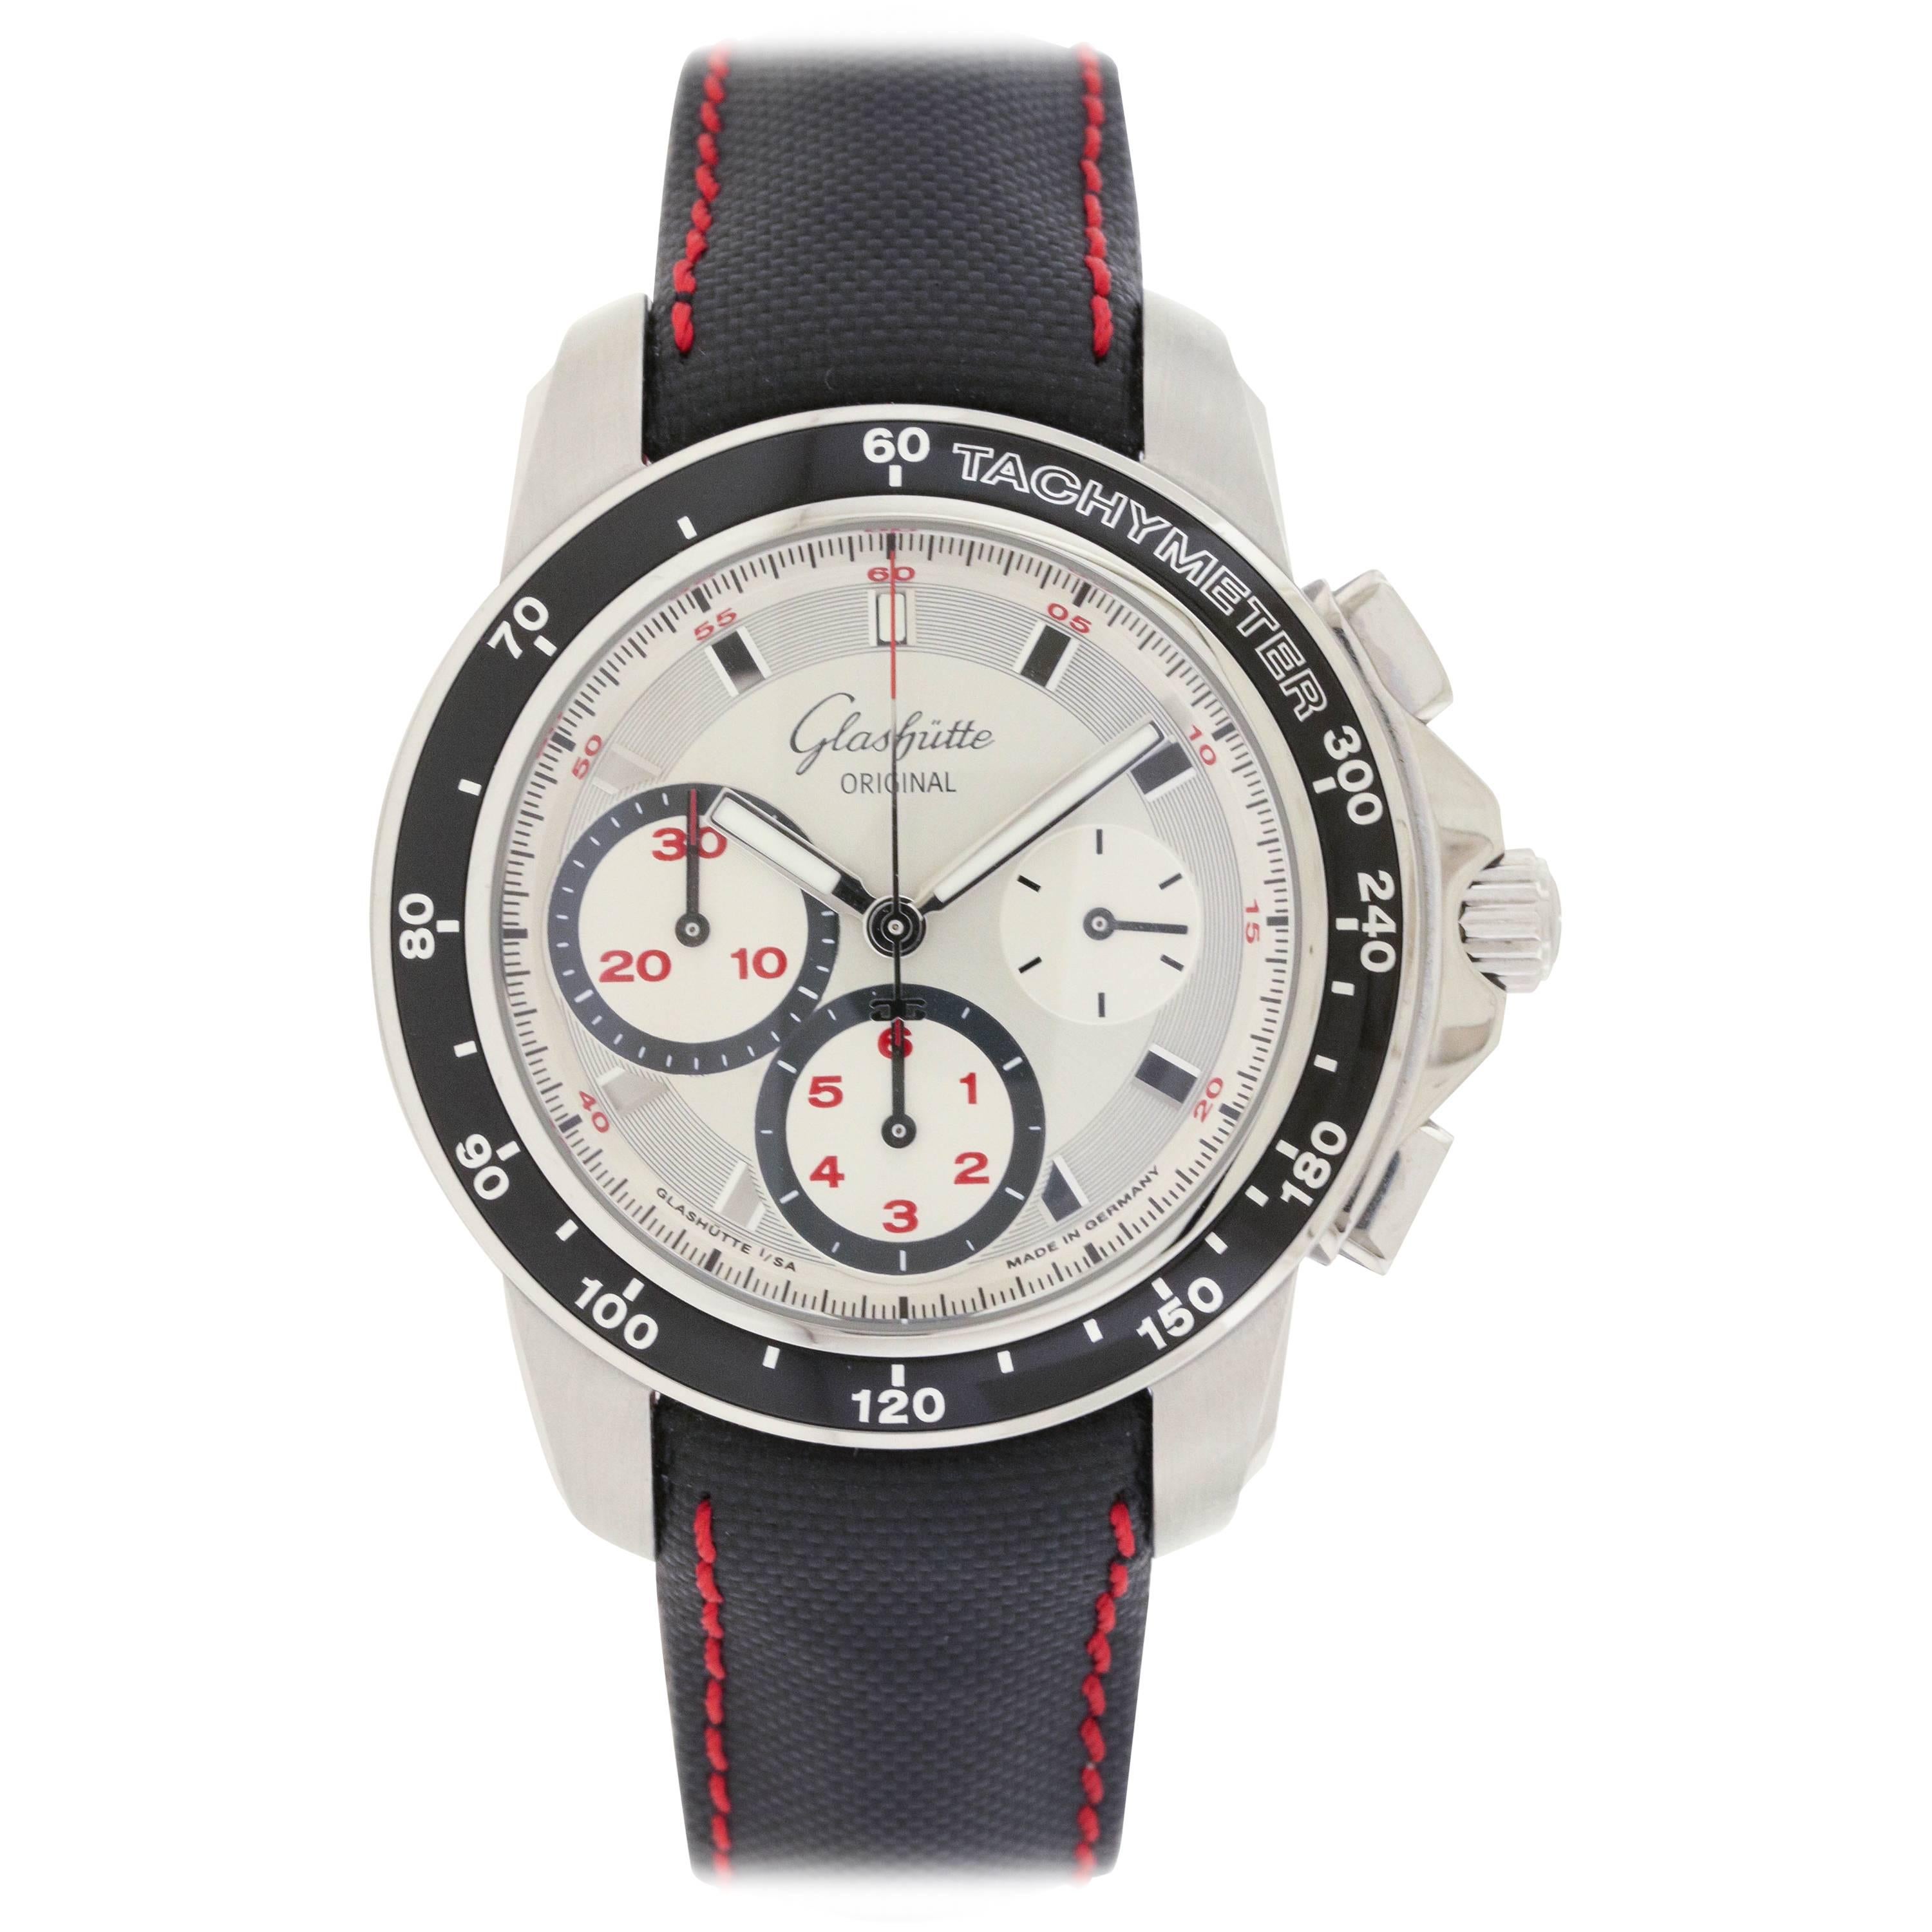 Glashutte Stainless Steel Original Evolution Sport Chronograph Wristwatch